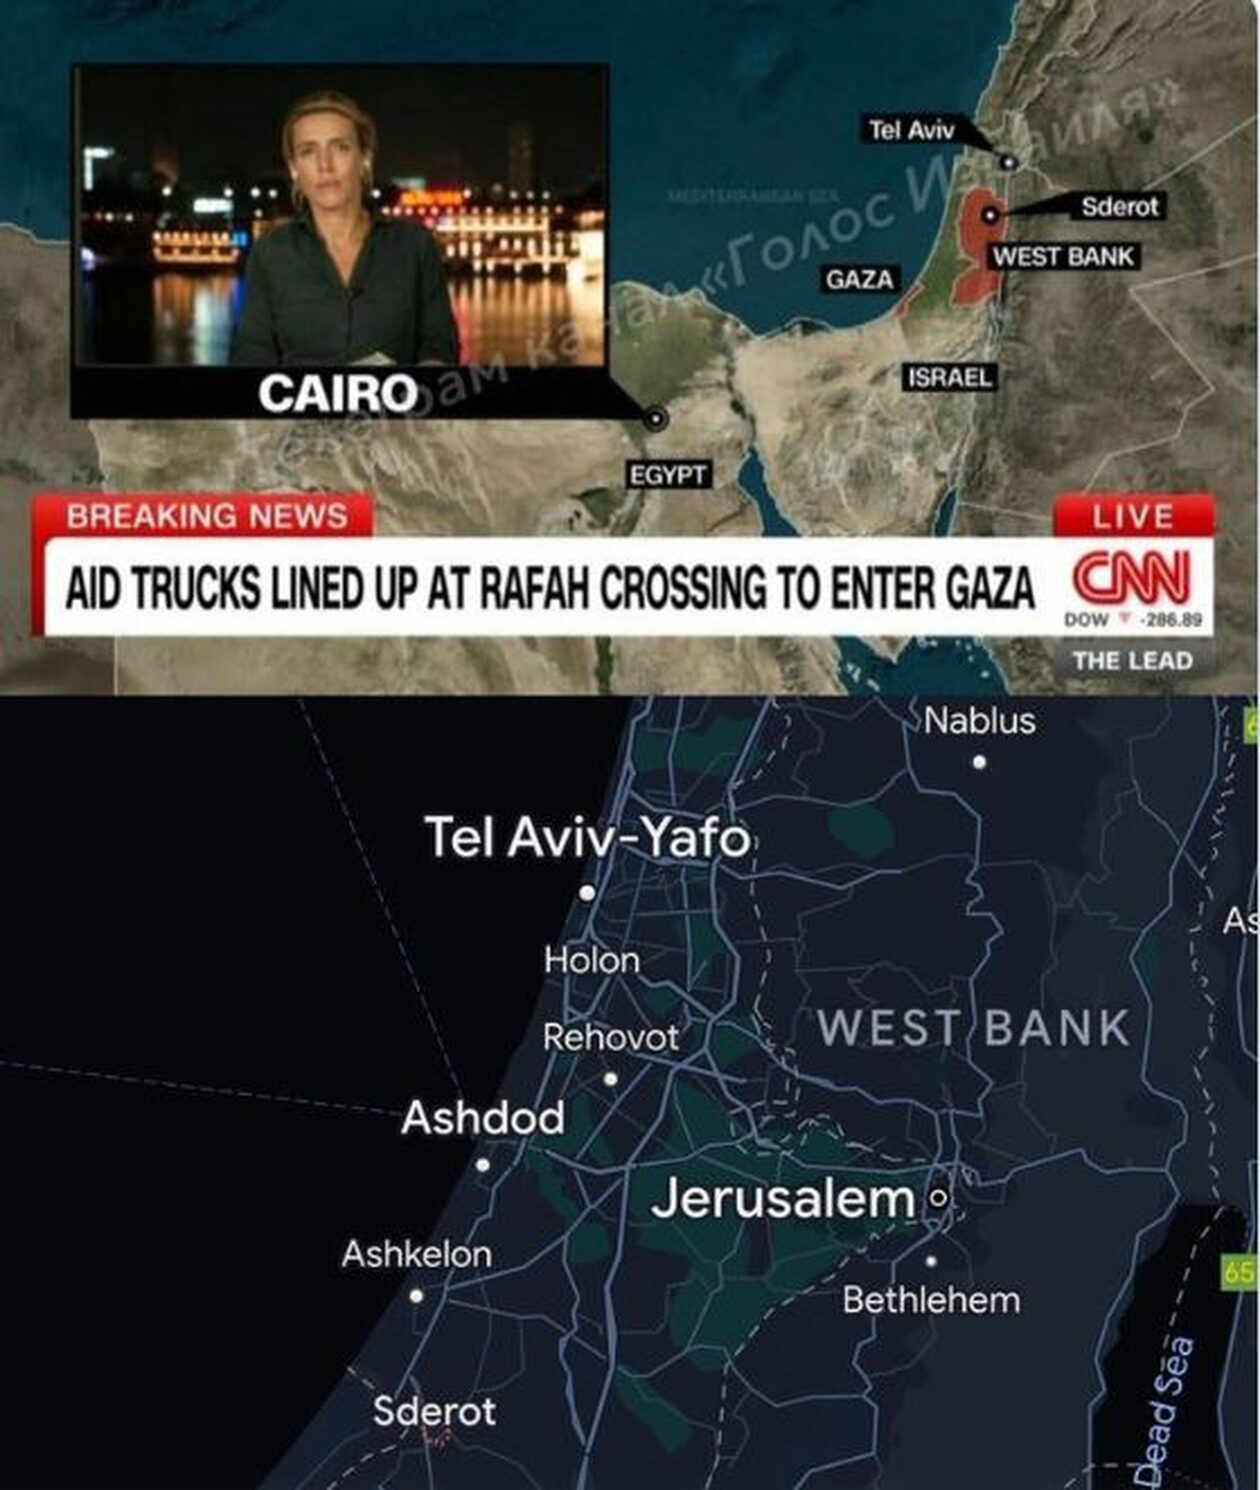 Λάθος χάρτης του Ισραήλ